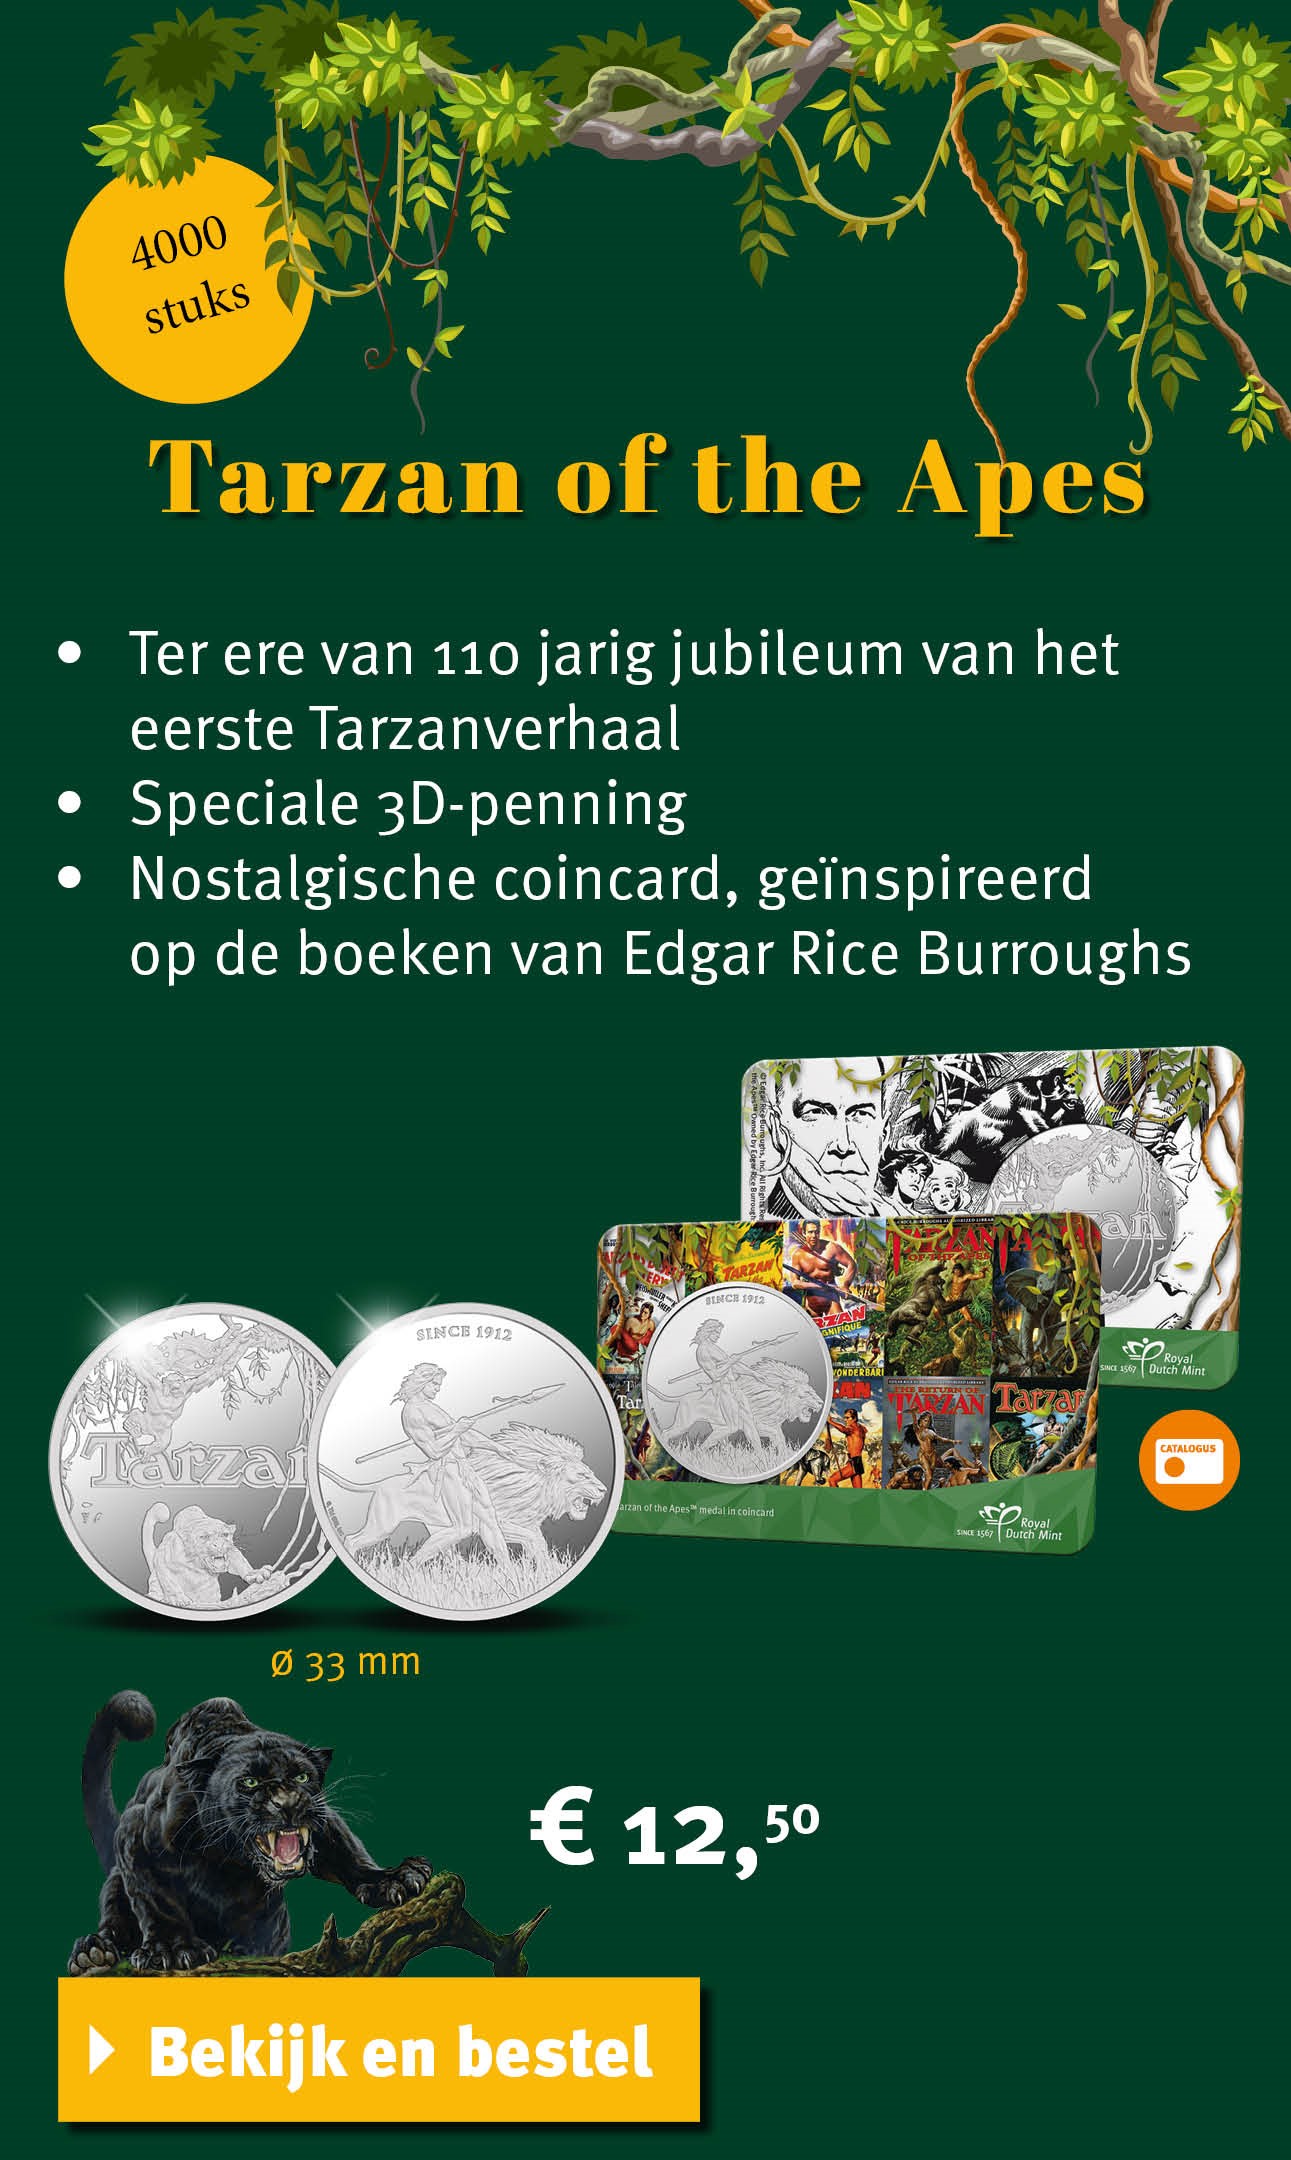 Bekijk en bestel: Tarzan of the Apes penning in coincard